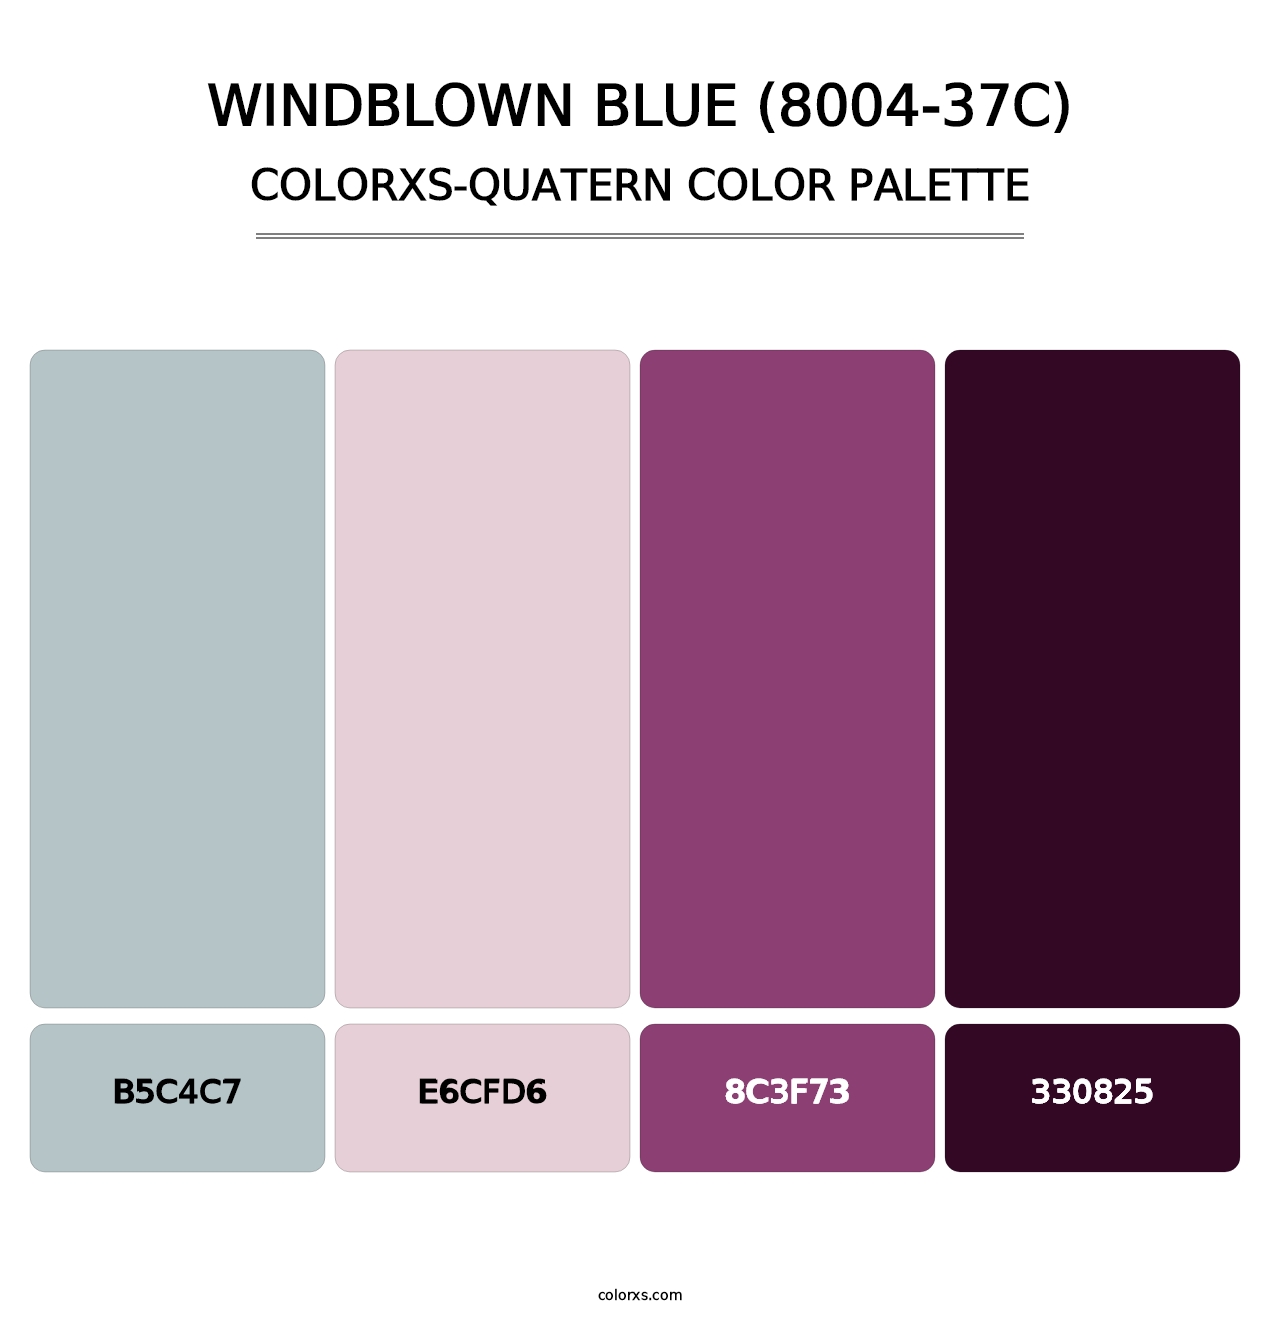 Windblown Blue (8004-37C) - Colorxs Quatern Palette